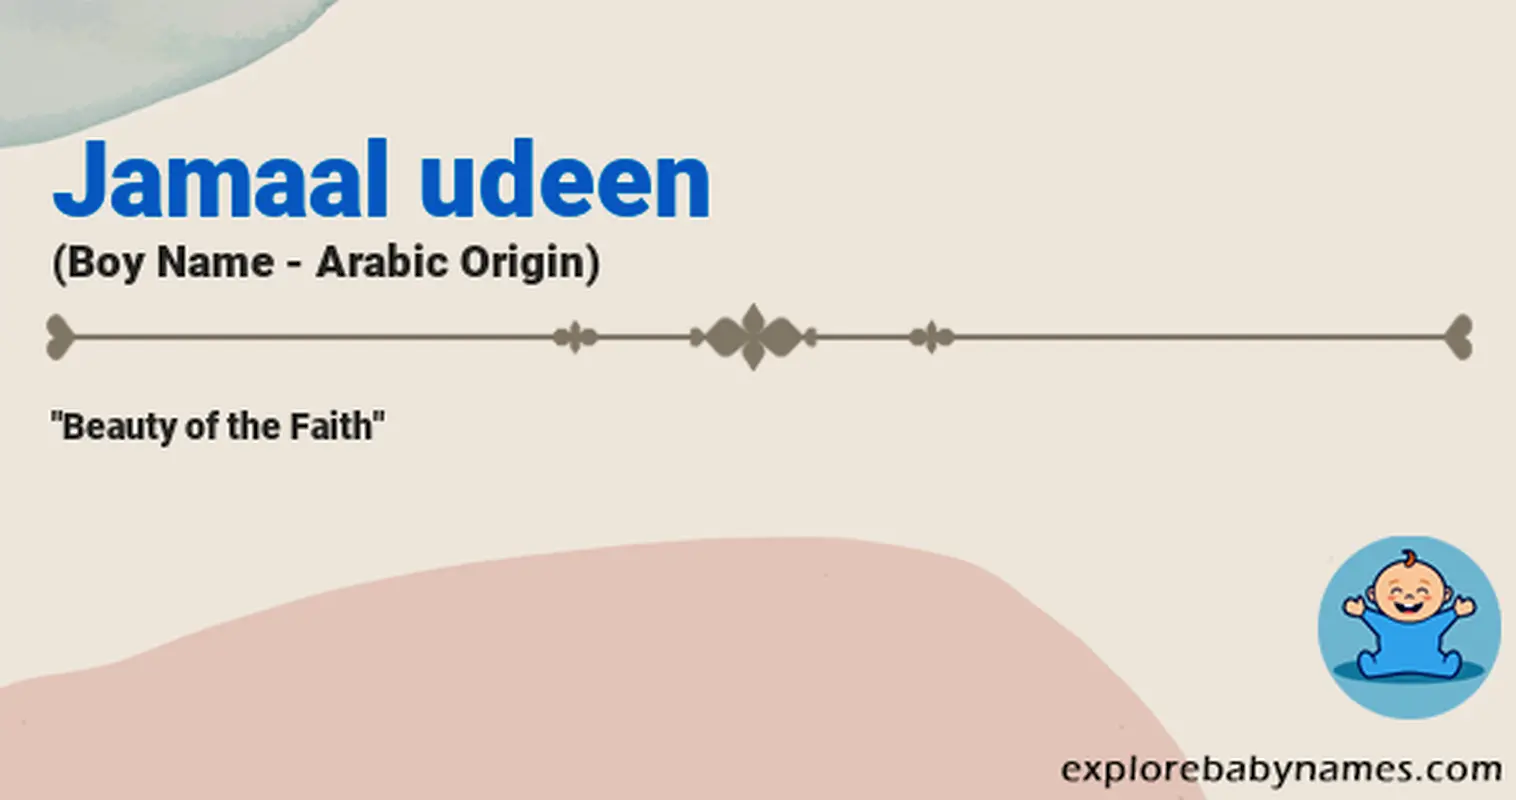 Meaning of Jamaal udeen